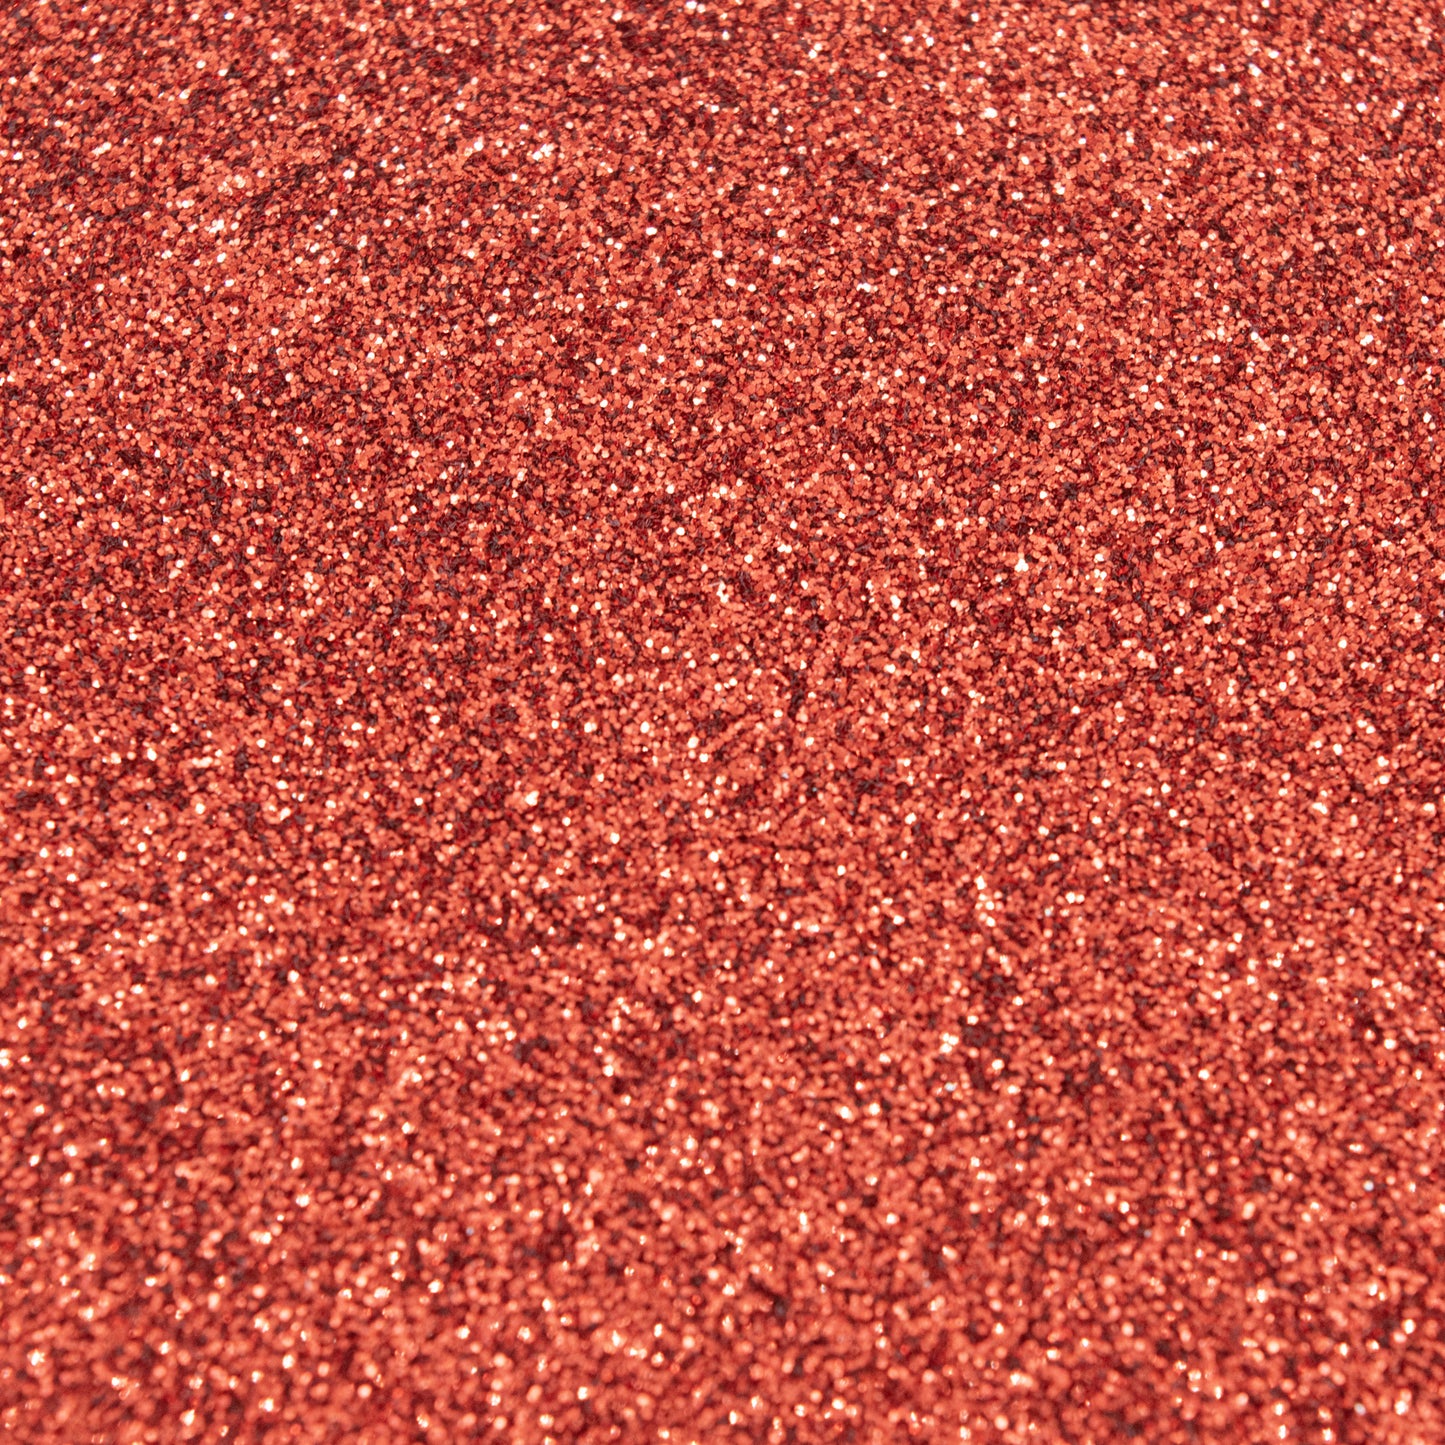 Glitter Standard Red 1kg BULK - Default (GLITSTRED1KG)